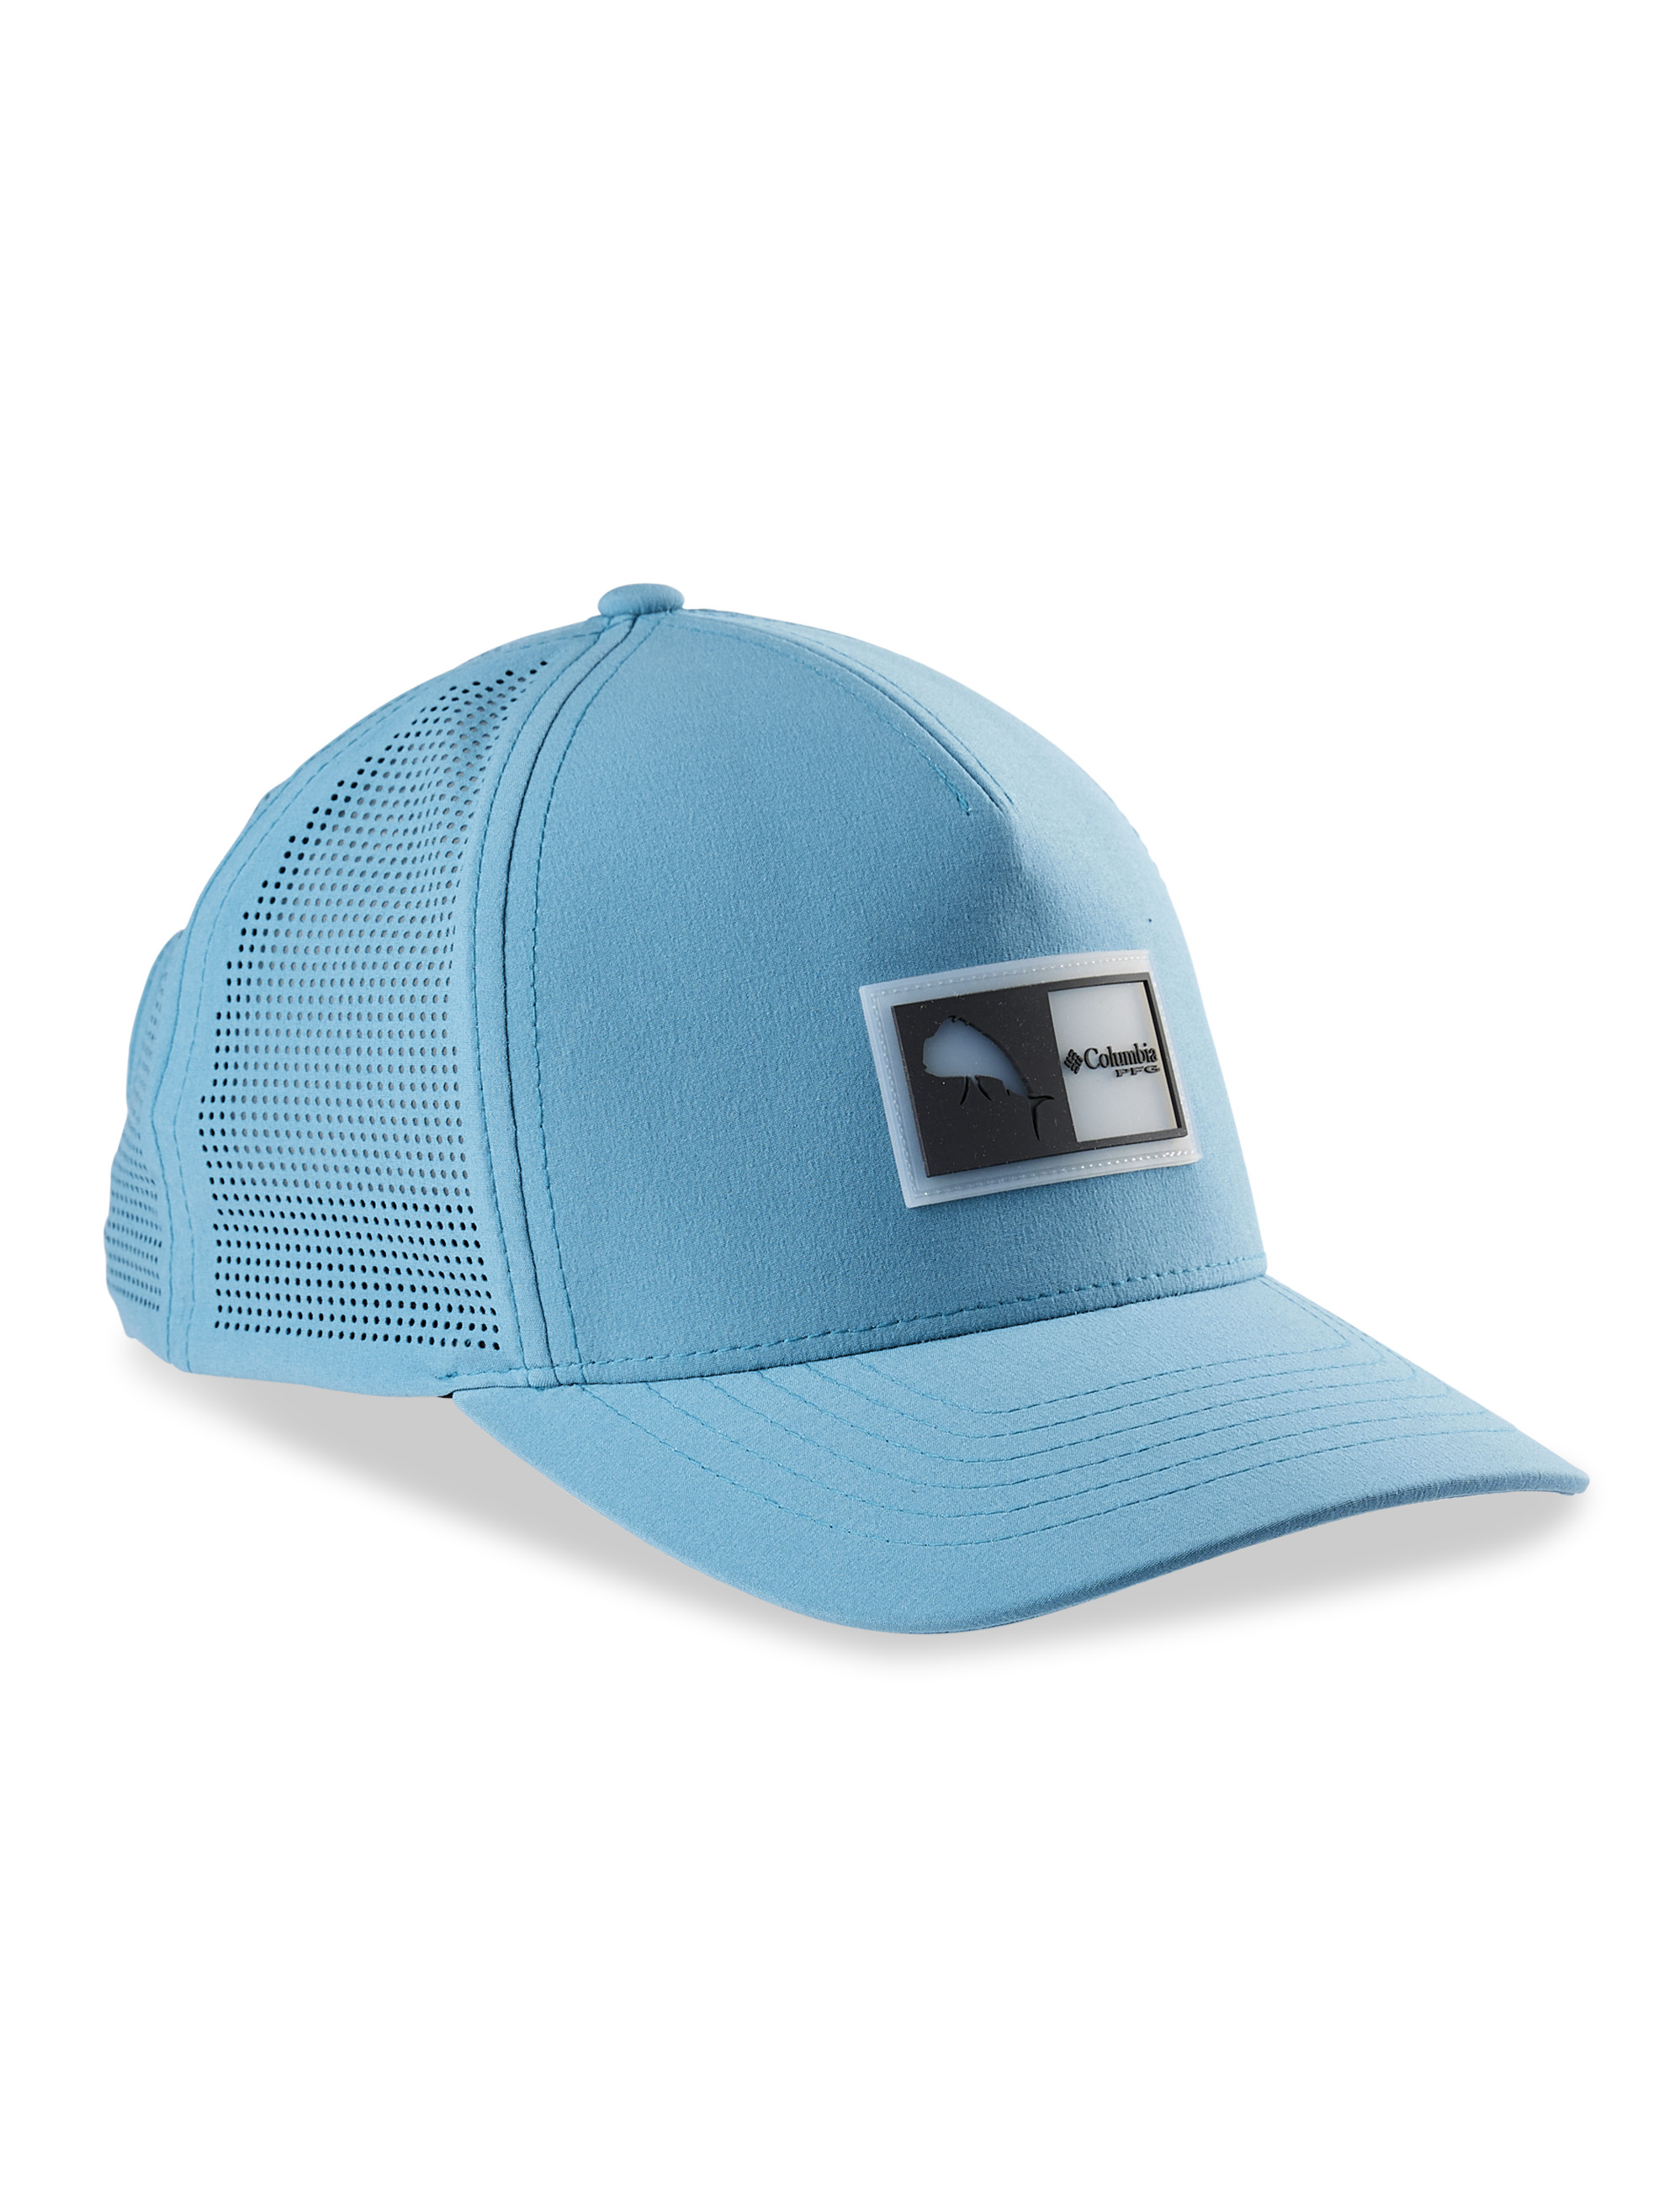 Columbia Men's Big & Tall PFG Elite Snapback Cap - Blue - Hats